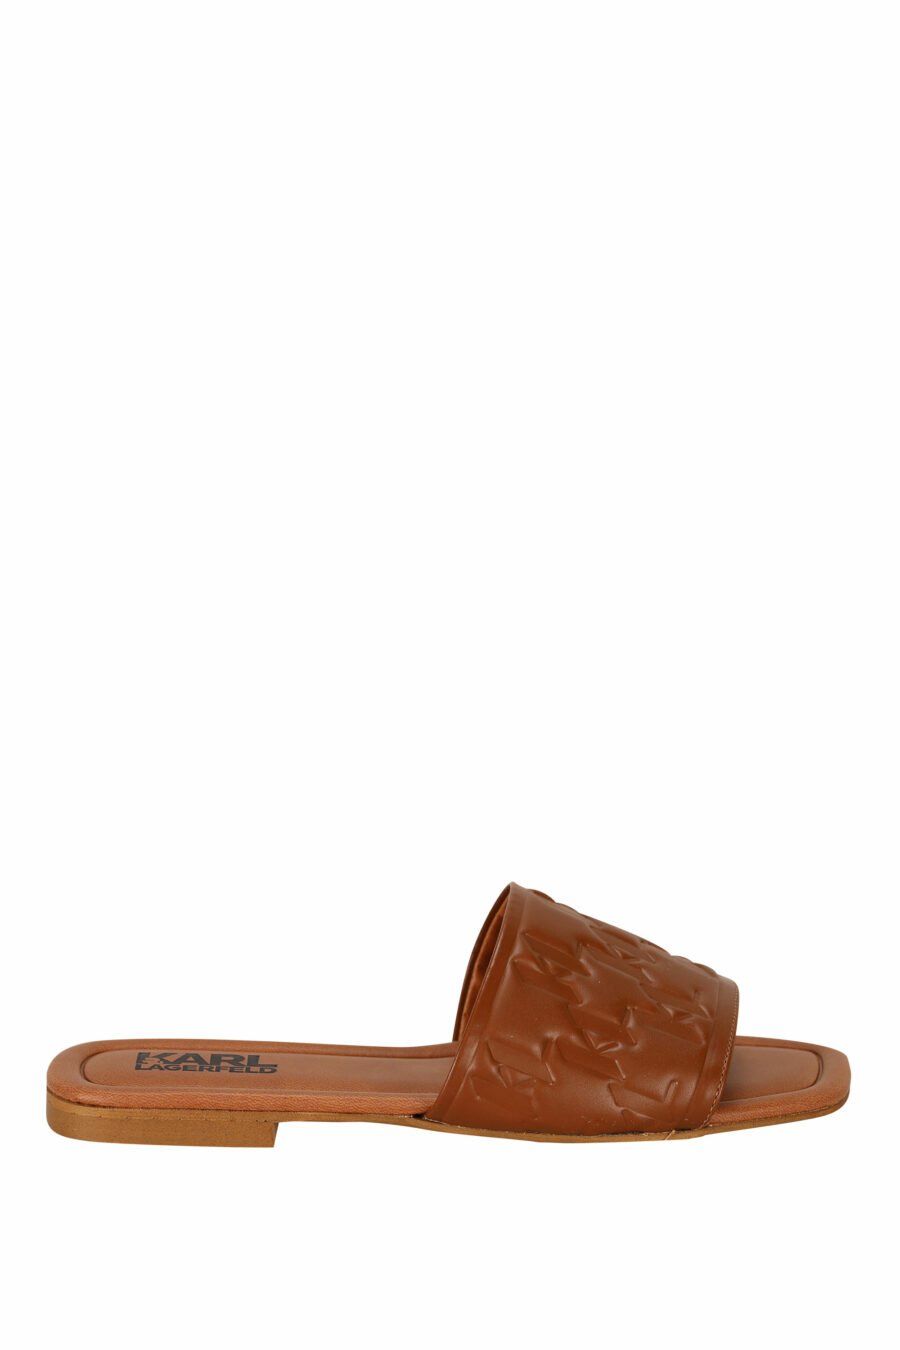 Sandalias marrón de cuero con logo monogram - 5059529404191